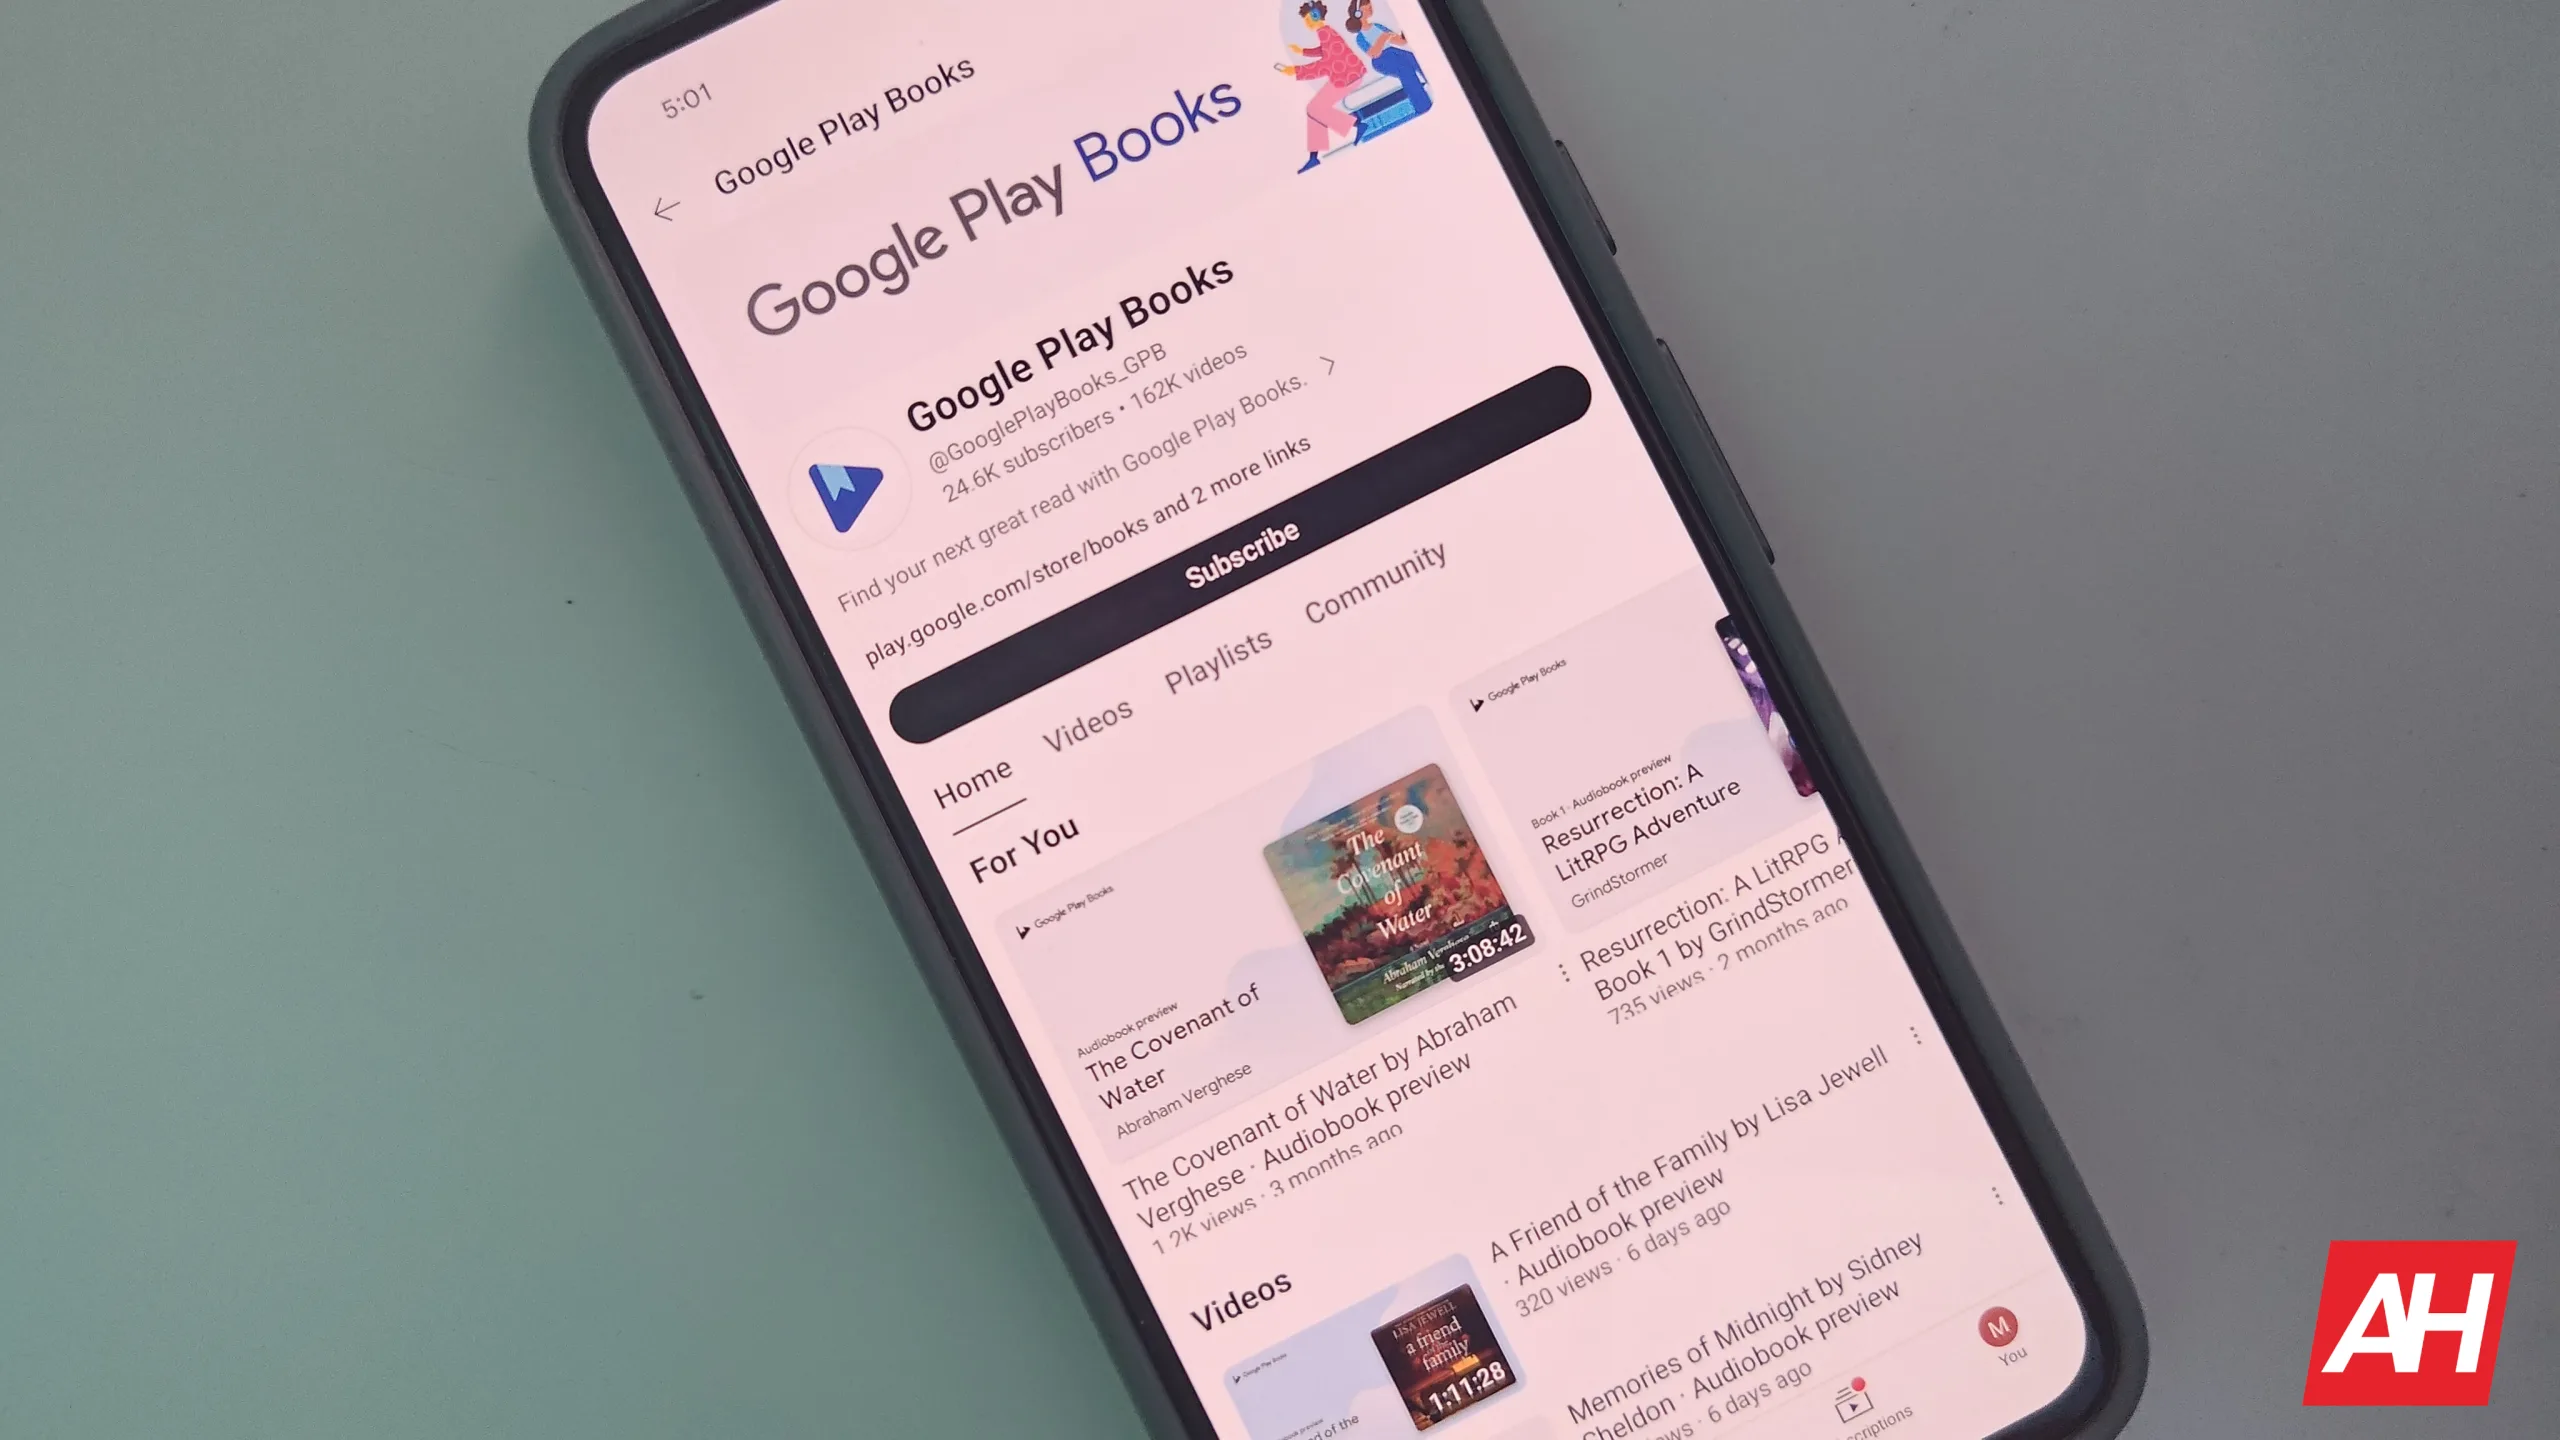 Vistas previas de audiolibros de Google Play Books ahora en YouTube